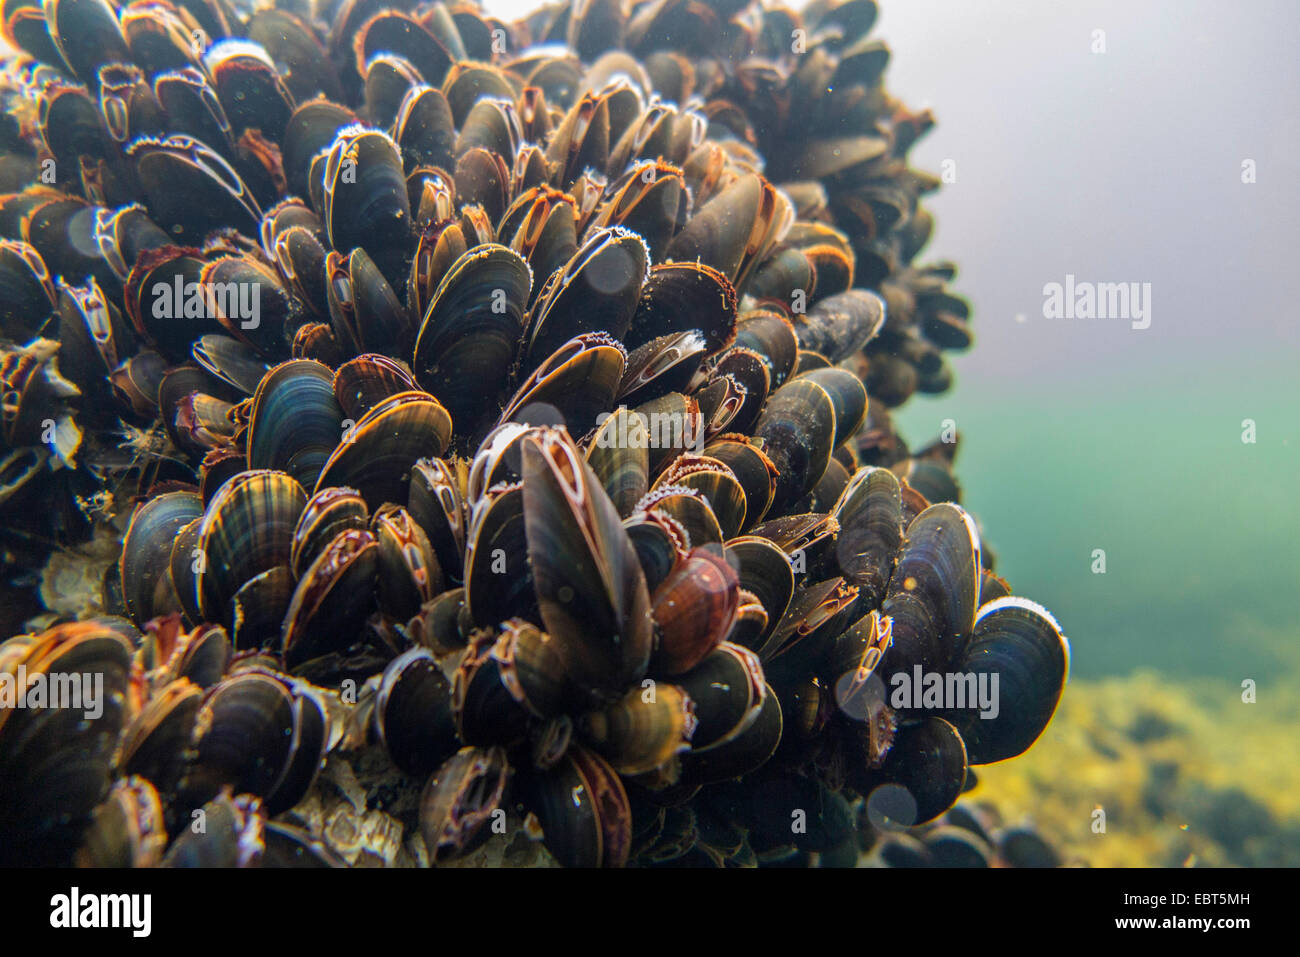 Les moules (Mytiloidea), colonie de moules sous l'eau, de la Norvège, Nordland Banque D'Images